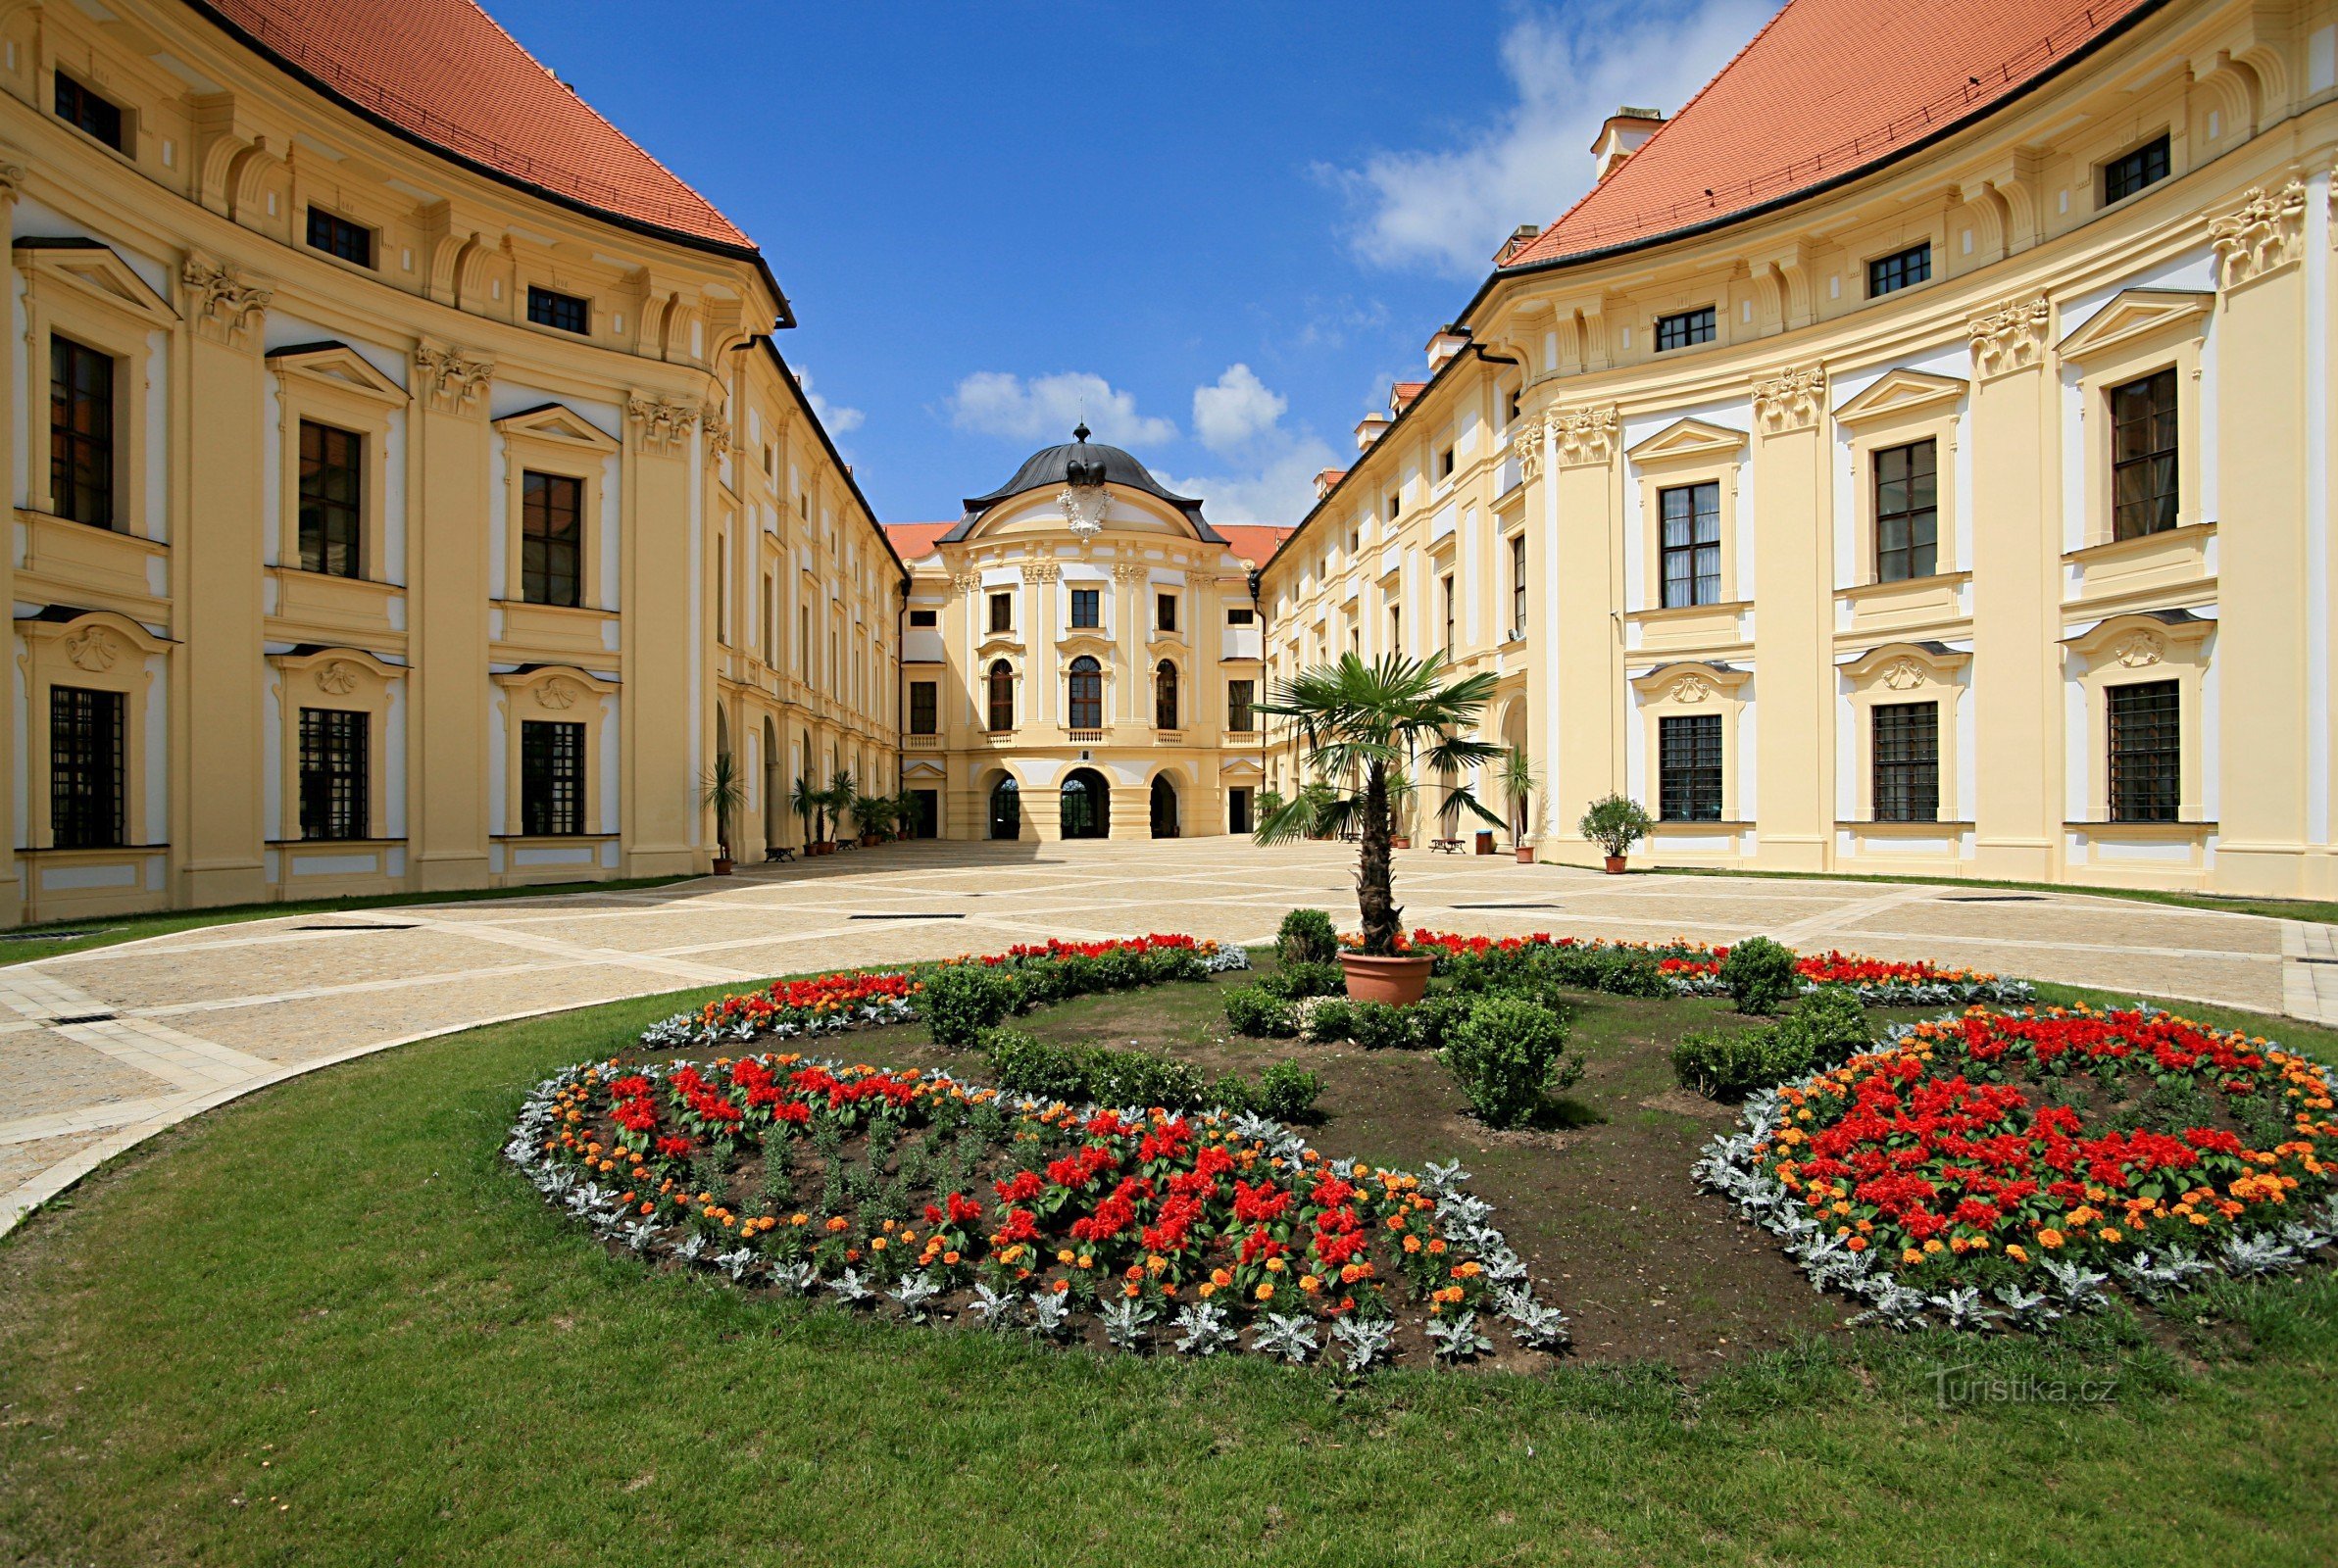 Dvorac Slavkov - Austerlitz